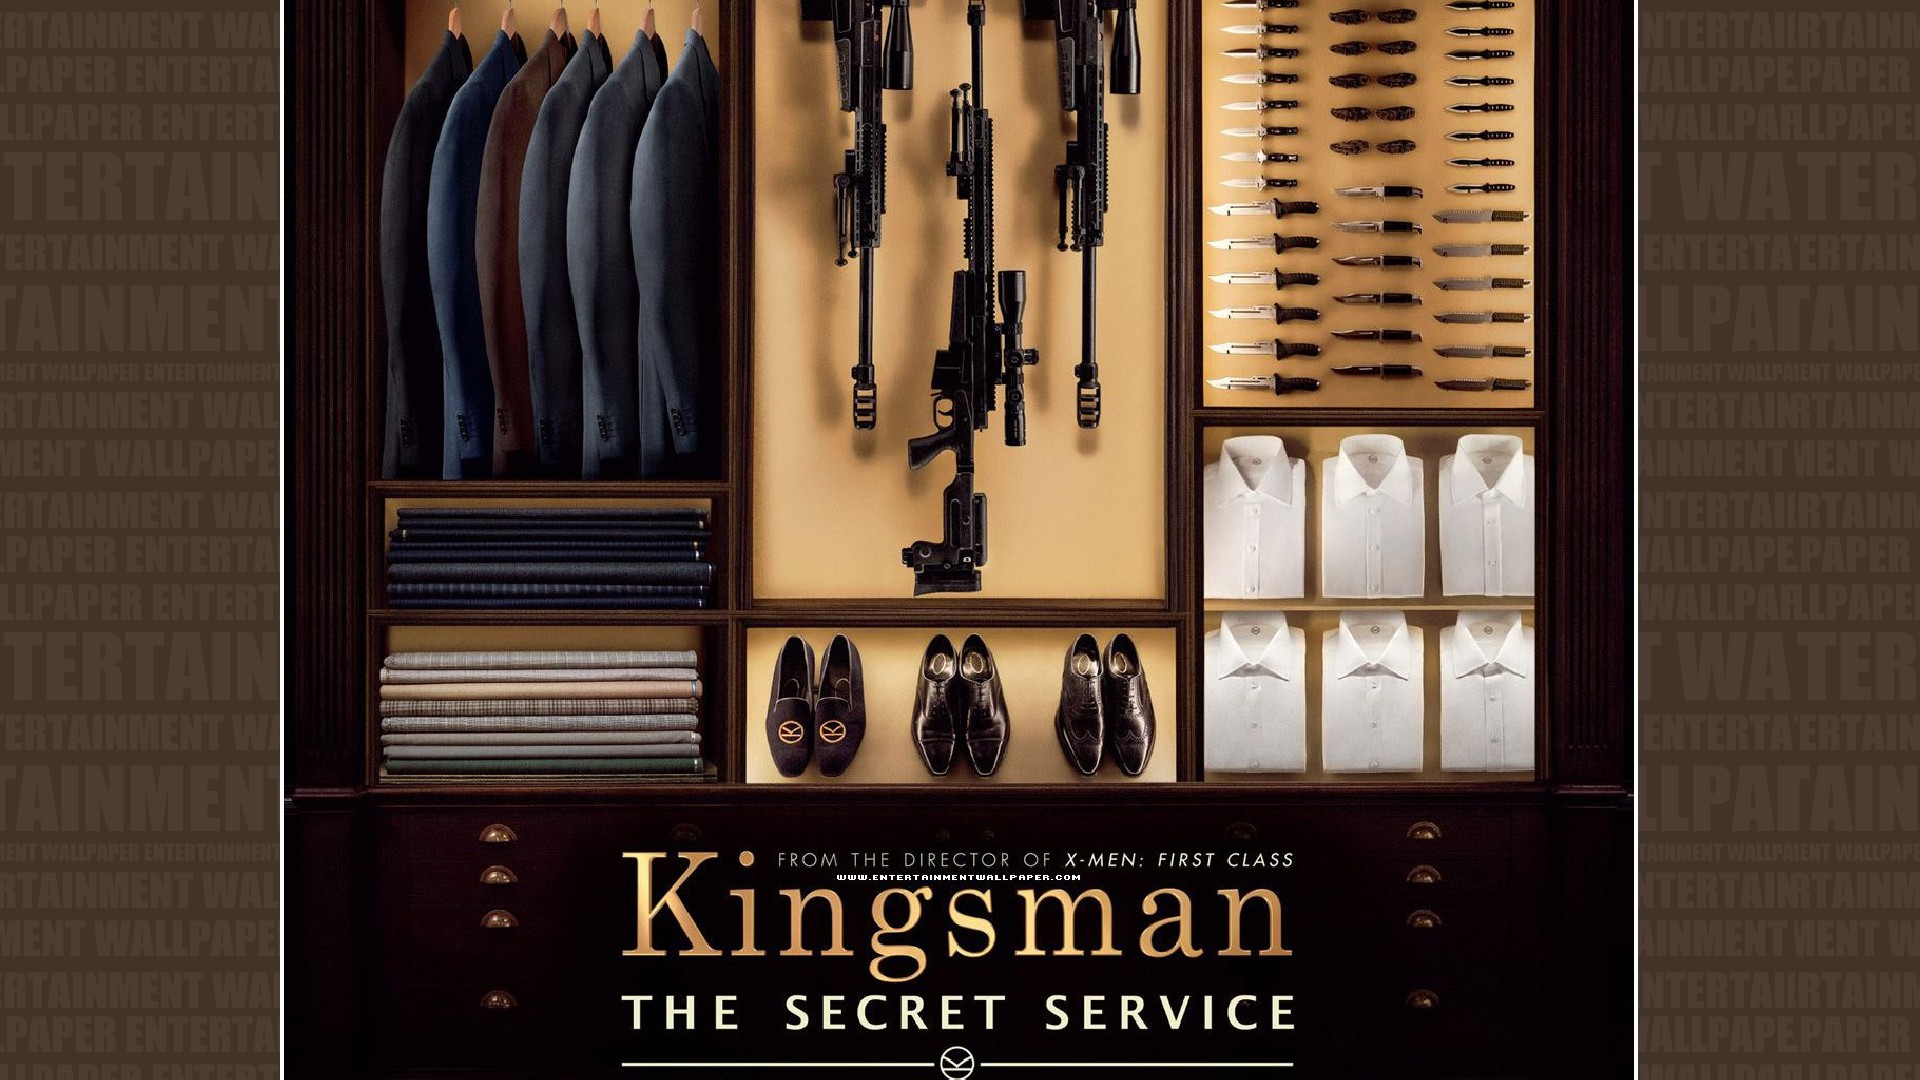 Kingsman The Secret Service Wallpaper   MixHD wallpapers 1920x1080